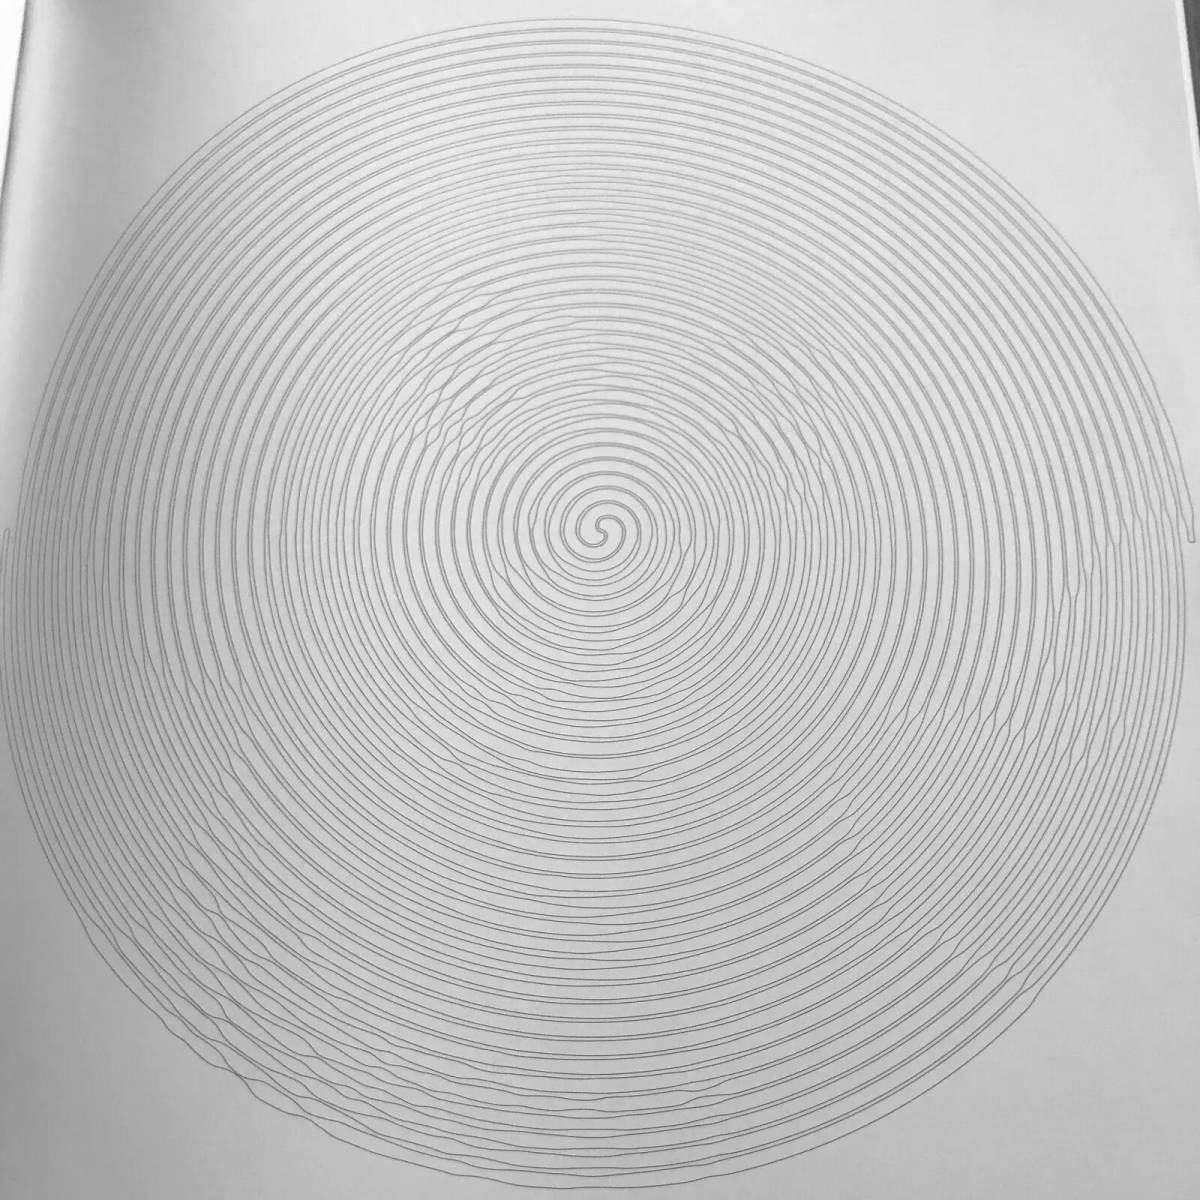 Подробная страница раскраски полосатого круга